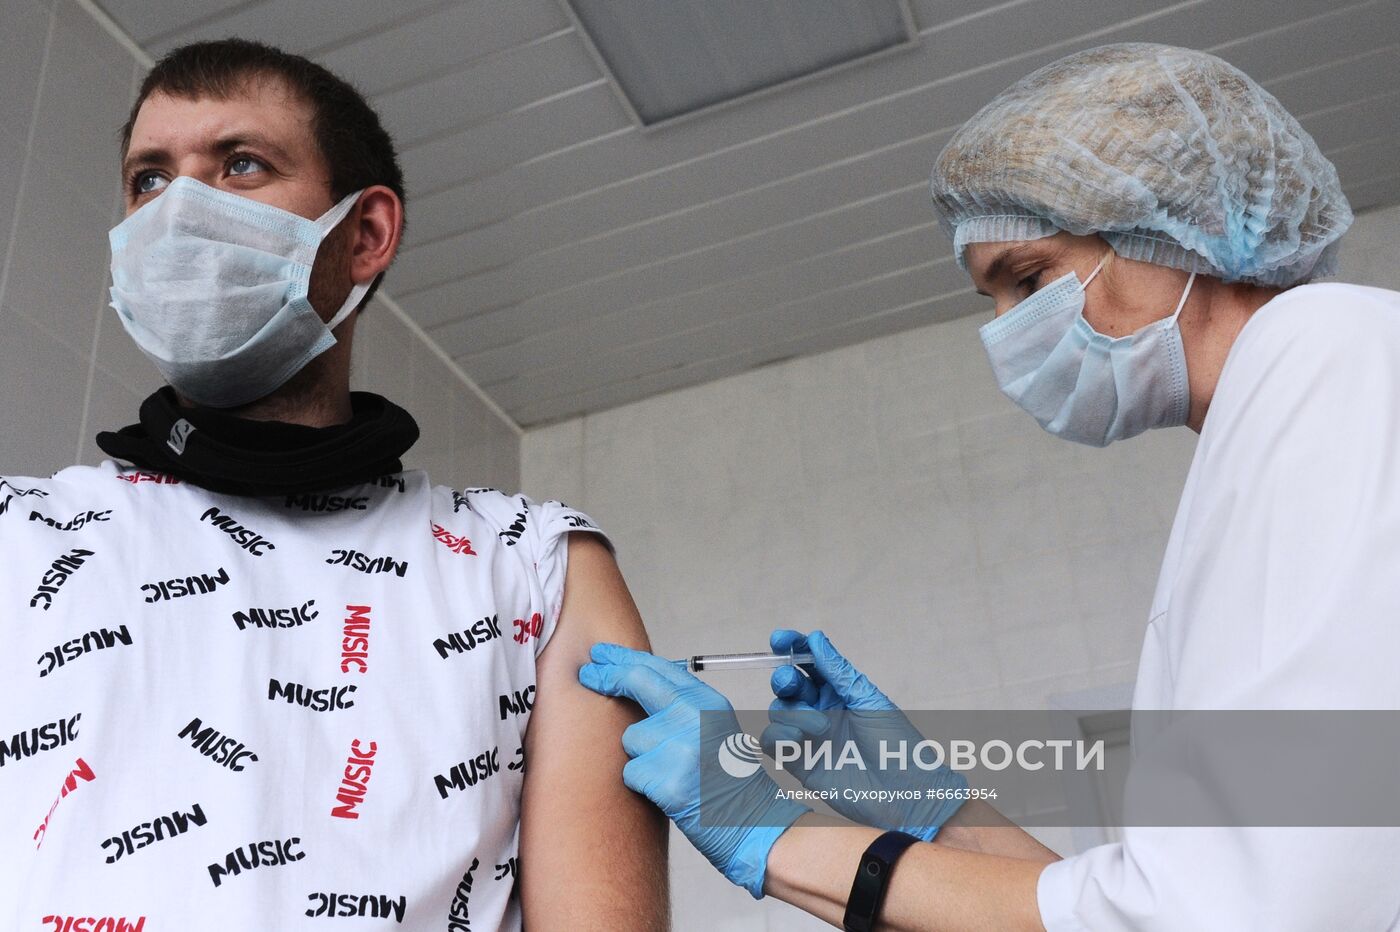 Вакцинация от Covid-19 сотрудников предприятия ПАО "Пигмент" в Тамбове